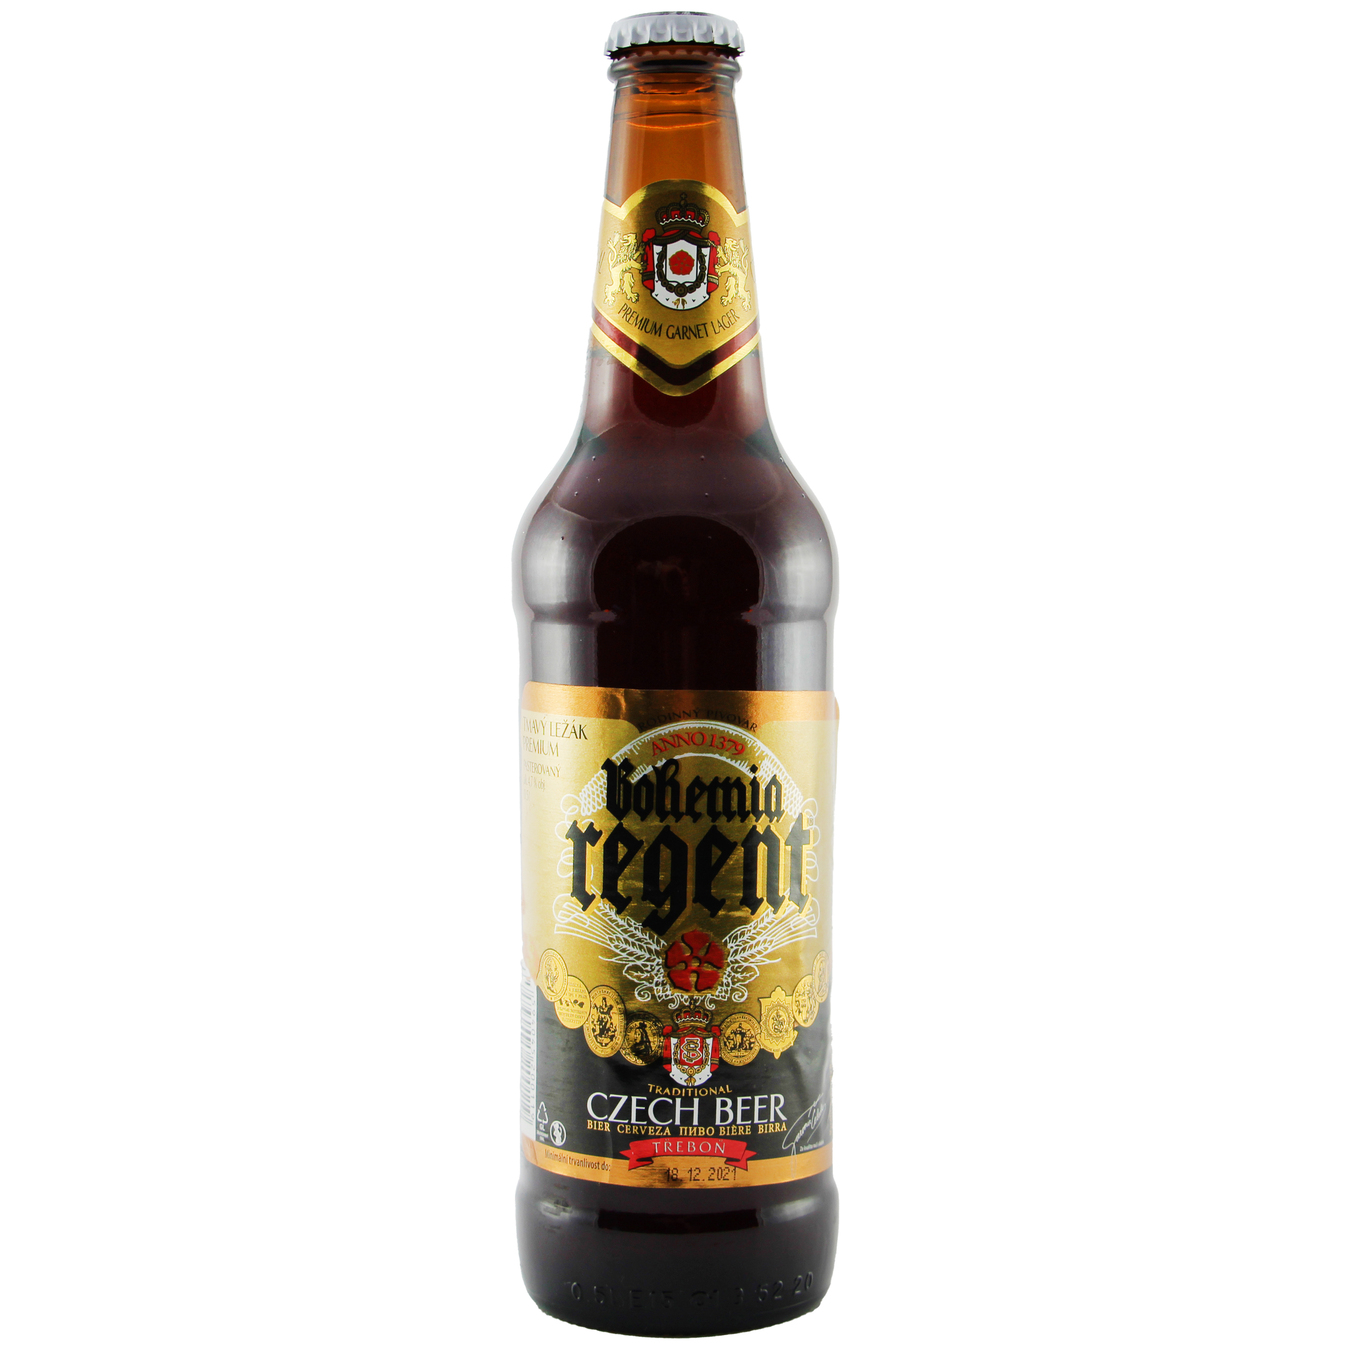 Пиво Bohemia Regent Premium Lager темне 4,7% 0,5л